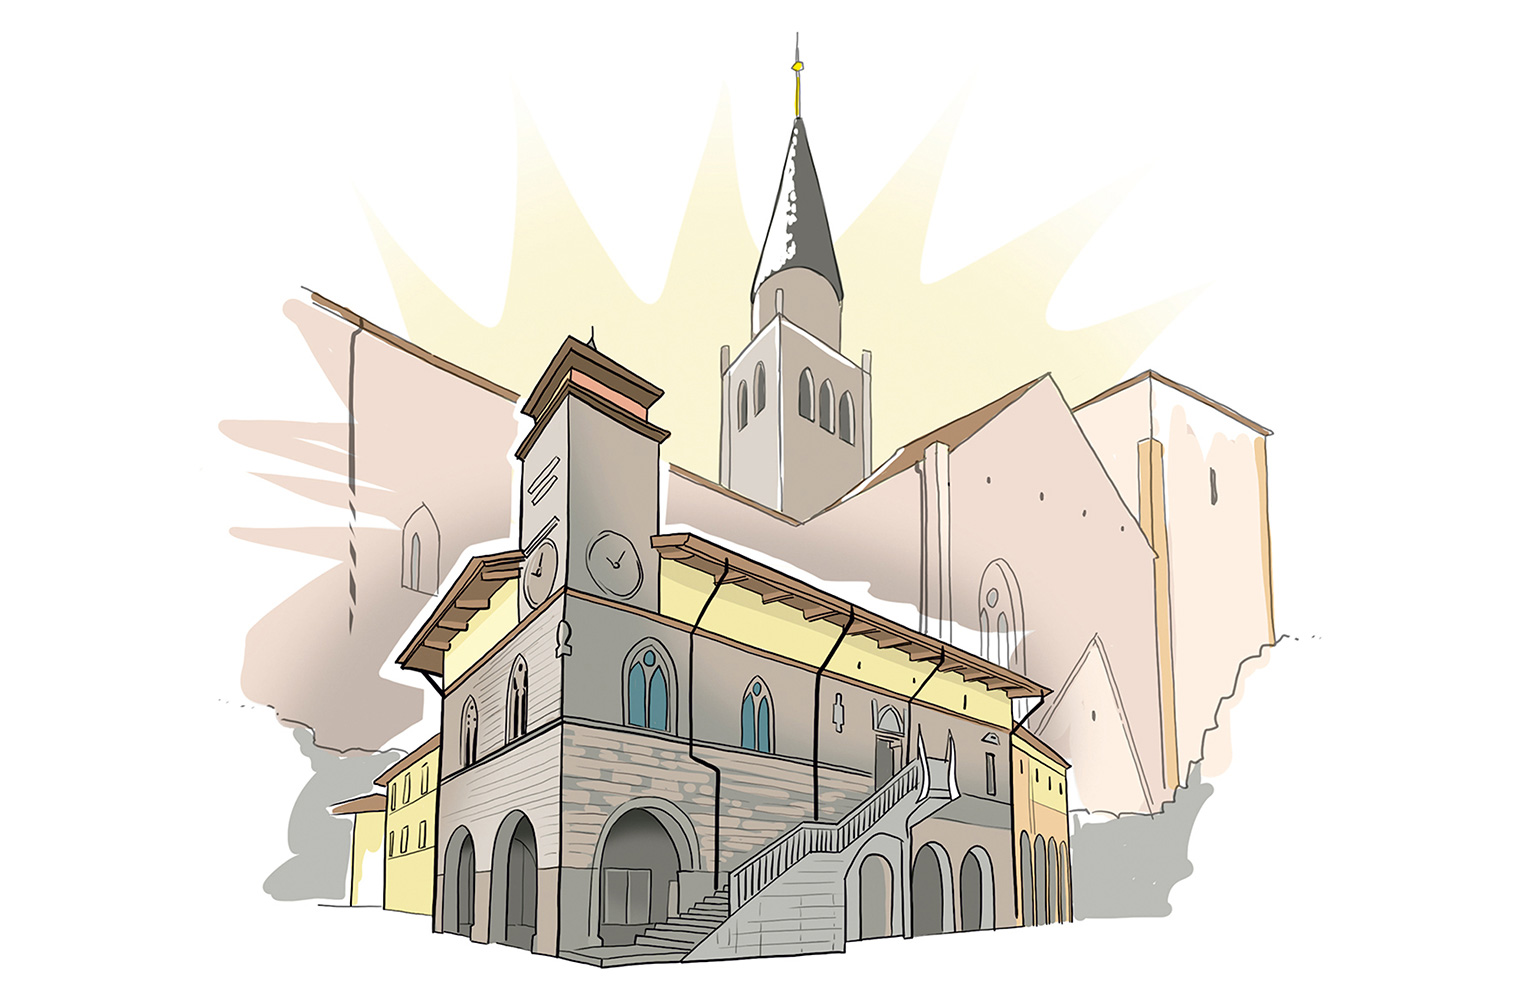 Eine gemalte Zeichnung. Eine Kirche im Hintergrund und weitere graue Gebäude. Im Vordergrund ein graues Gebäude, das einem Rathaus mit Uhr ähnelt.